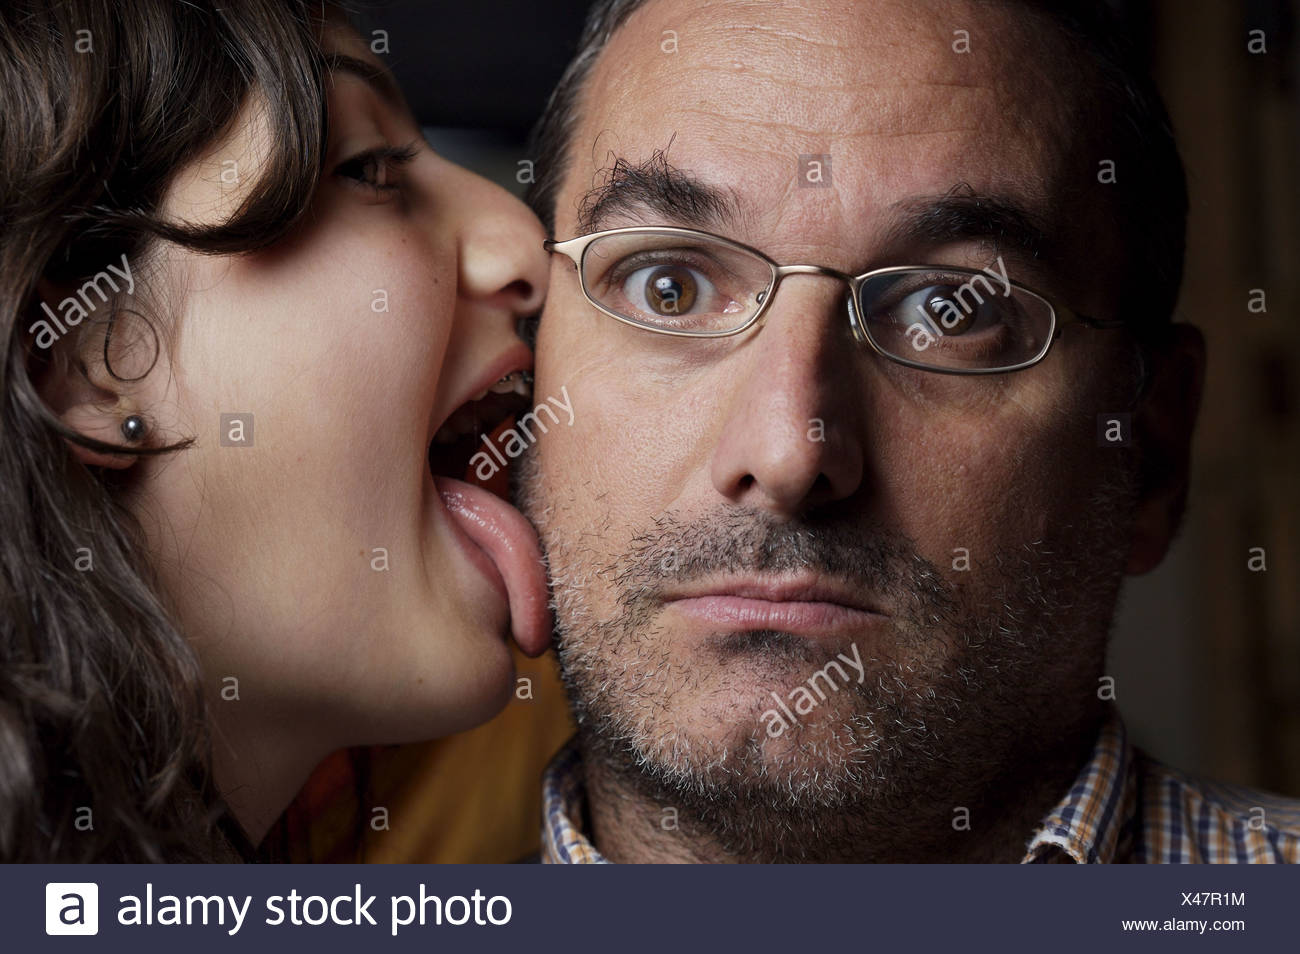 3 girls lick face - Nude photos